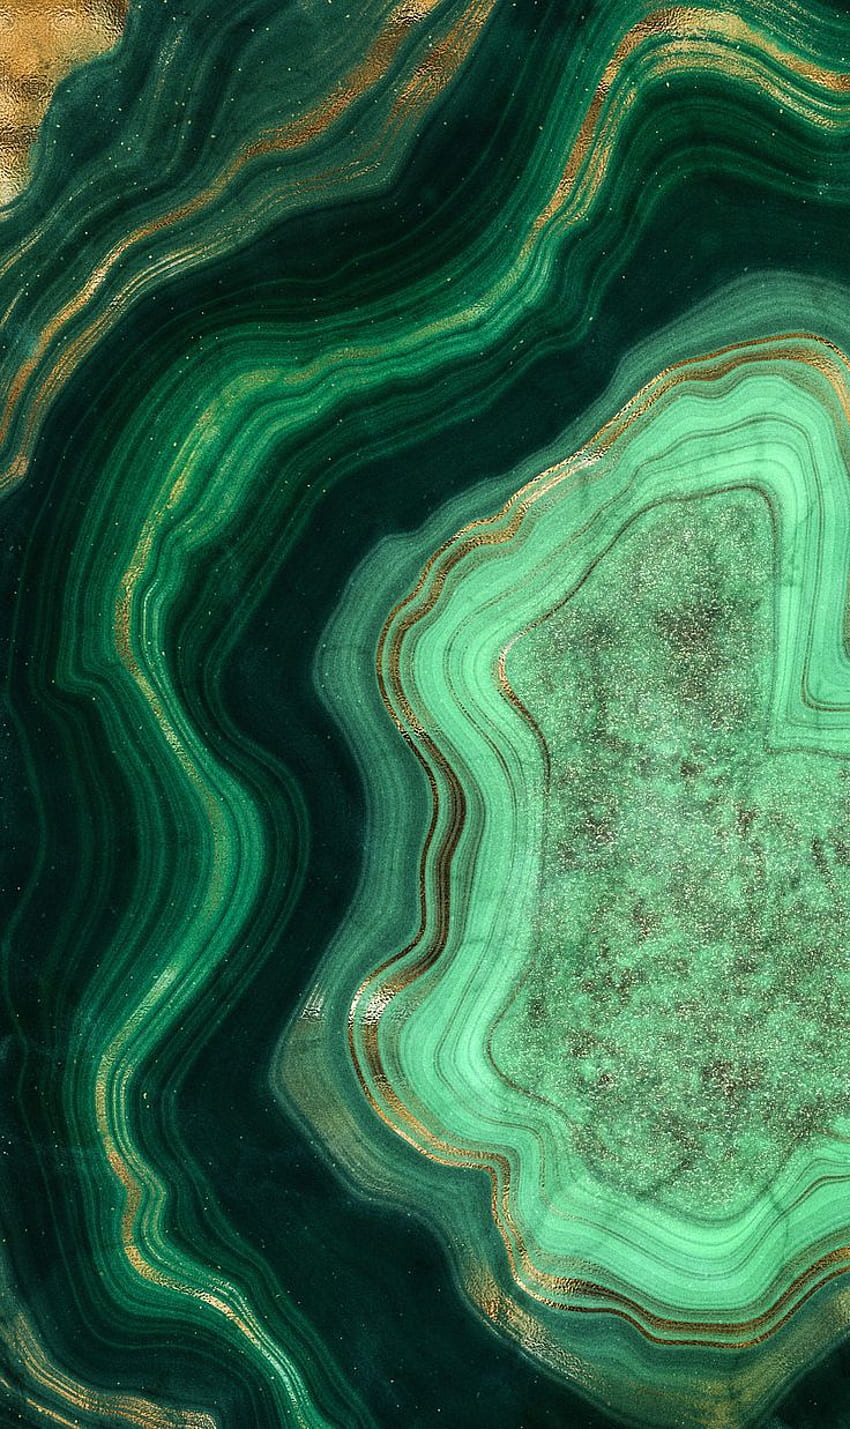 Grüner Marmor Gold Geode iPhone Hintergrund im Jahr 2021. iPhone grün, Wand. Gold iphone, Marmor iphone, iPhone grün, grüner Achat HD-Handy-Hintergrundbild